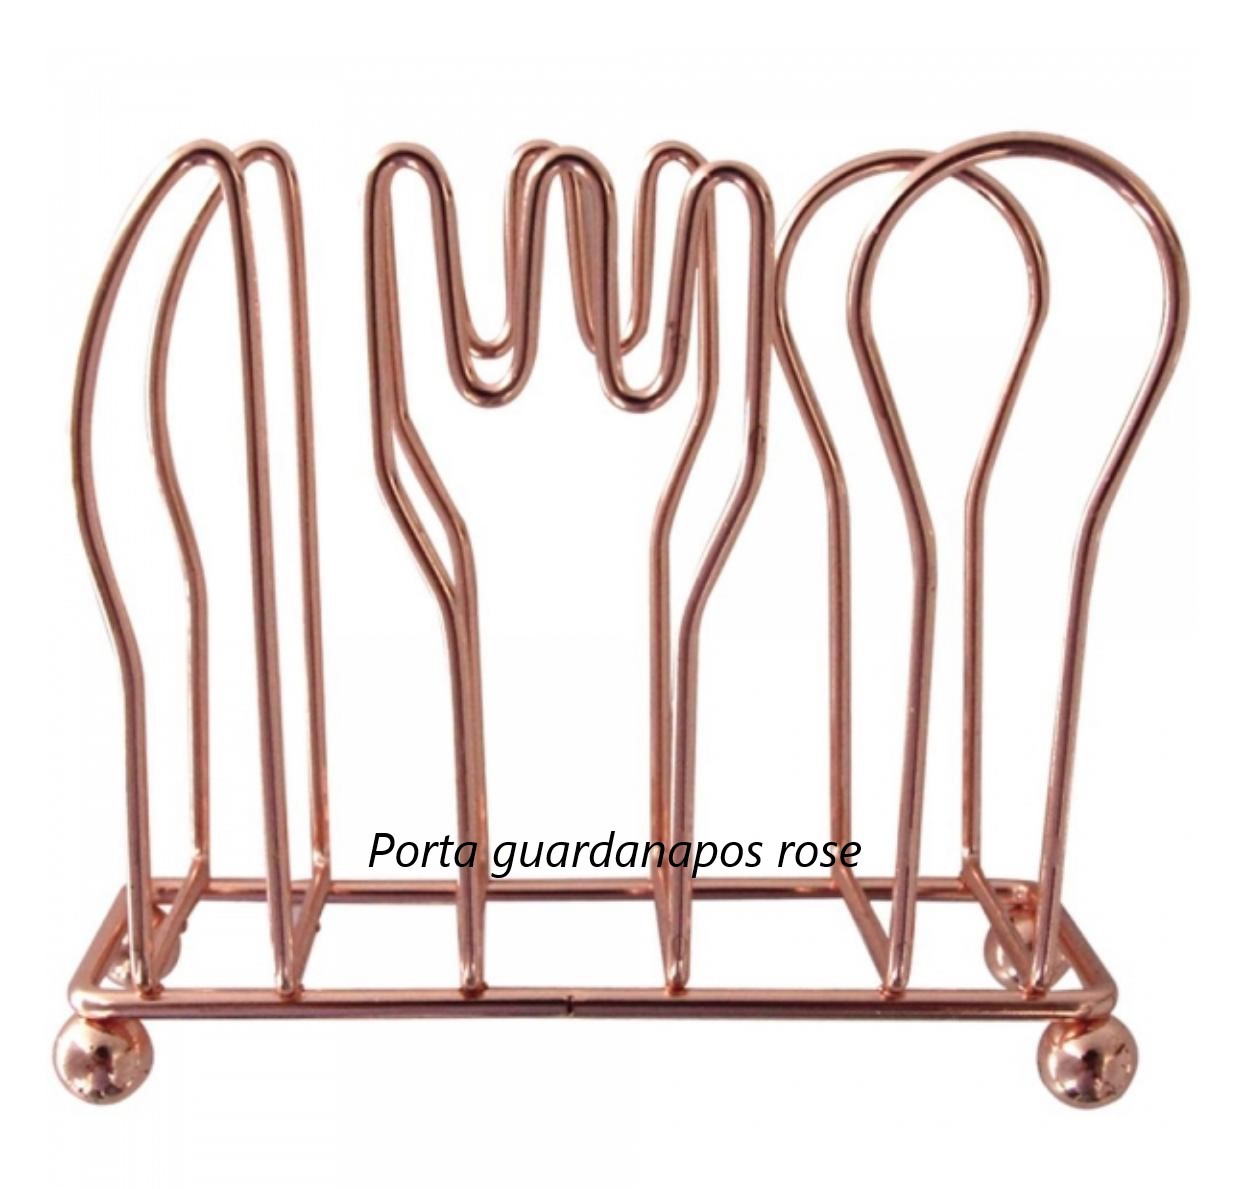 Porta guardanapo de mesa cozinha rose bobre de metal cromado 10x4x8 cm ck4258